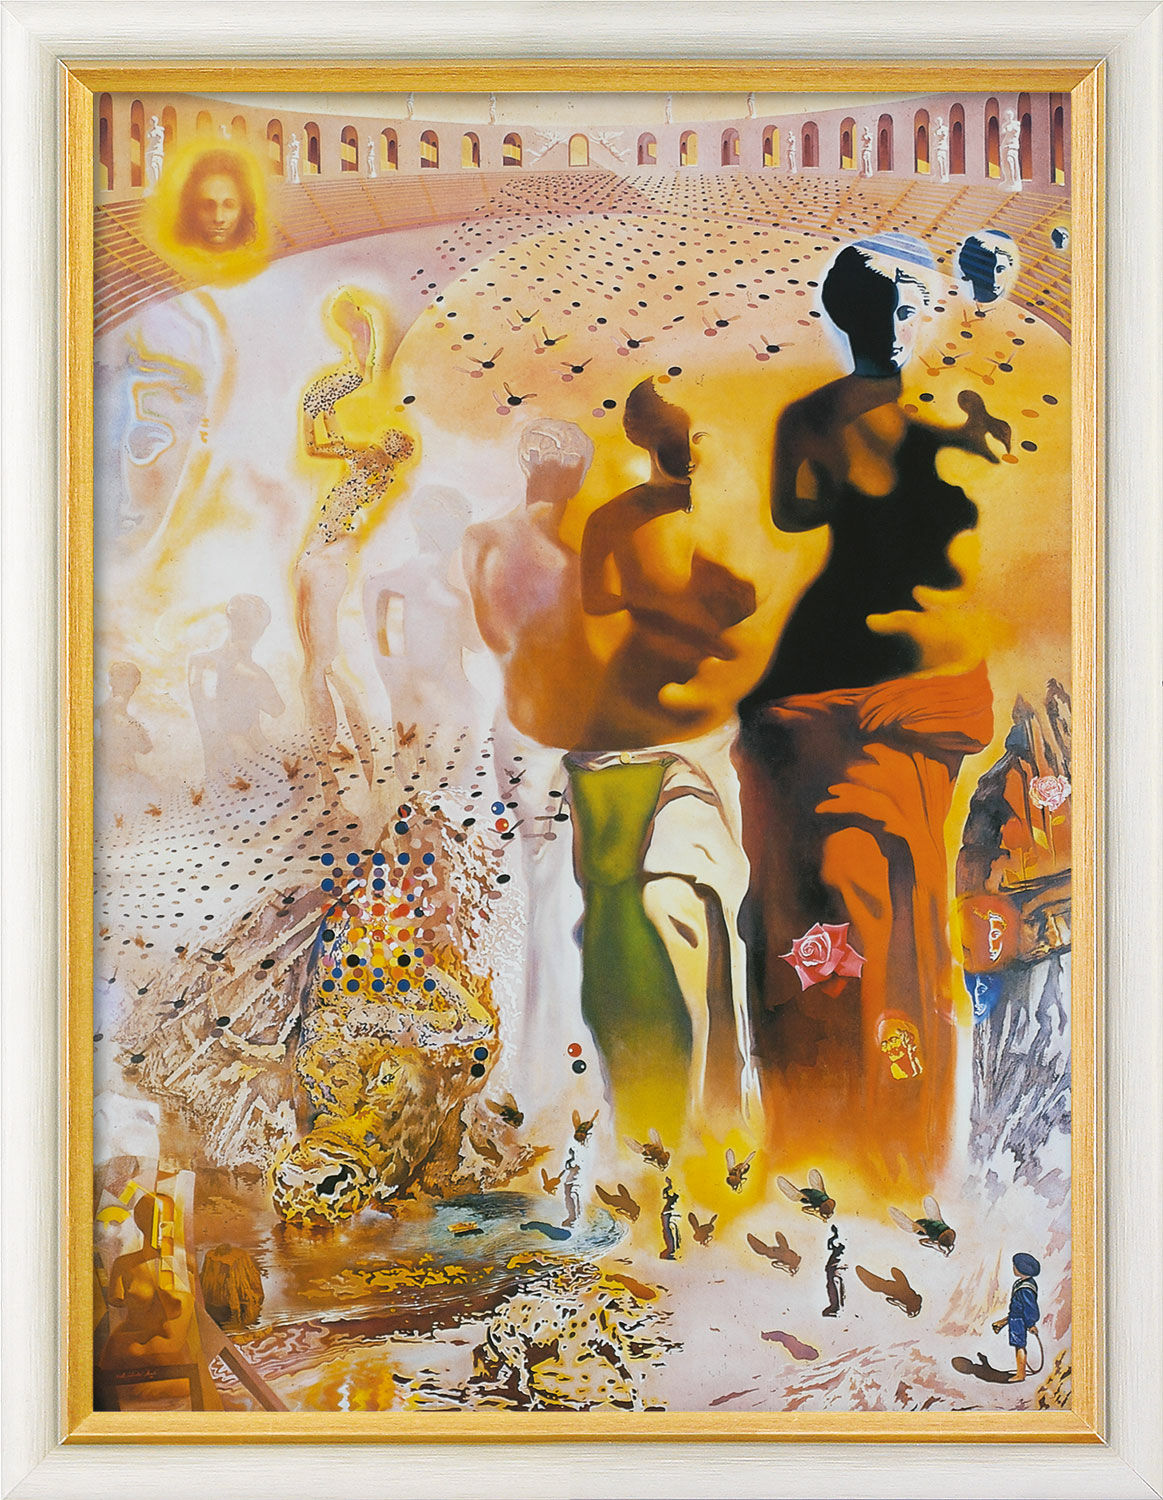 Bild "Der halluzinogene Torero" (1968-70), gerahmt von Salvador Dalí